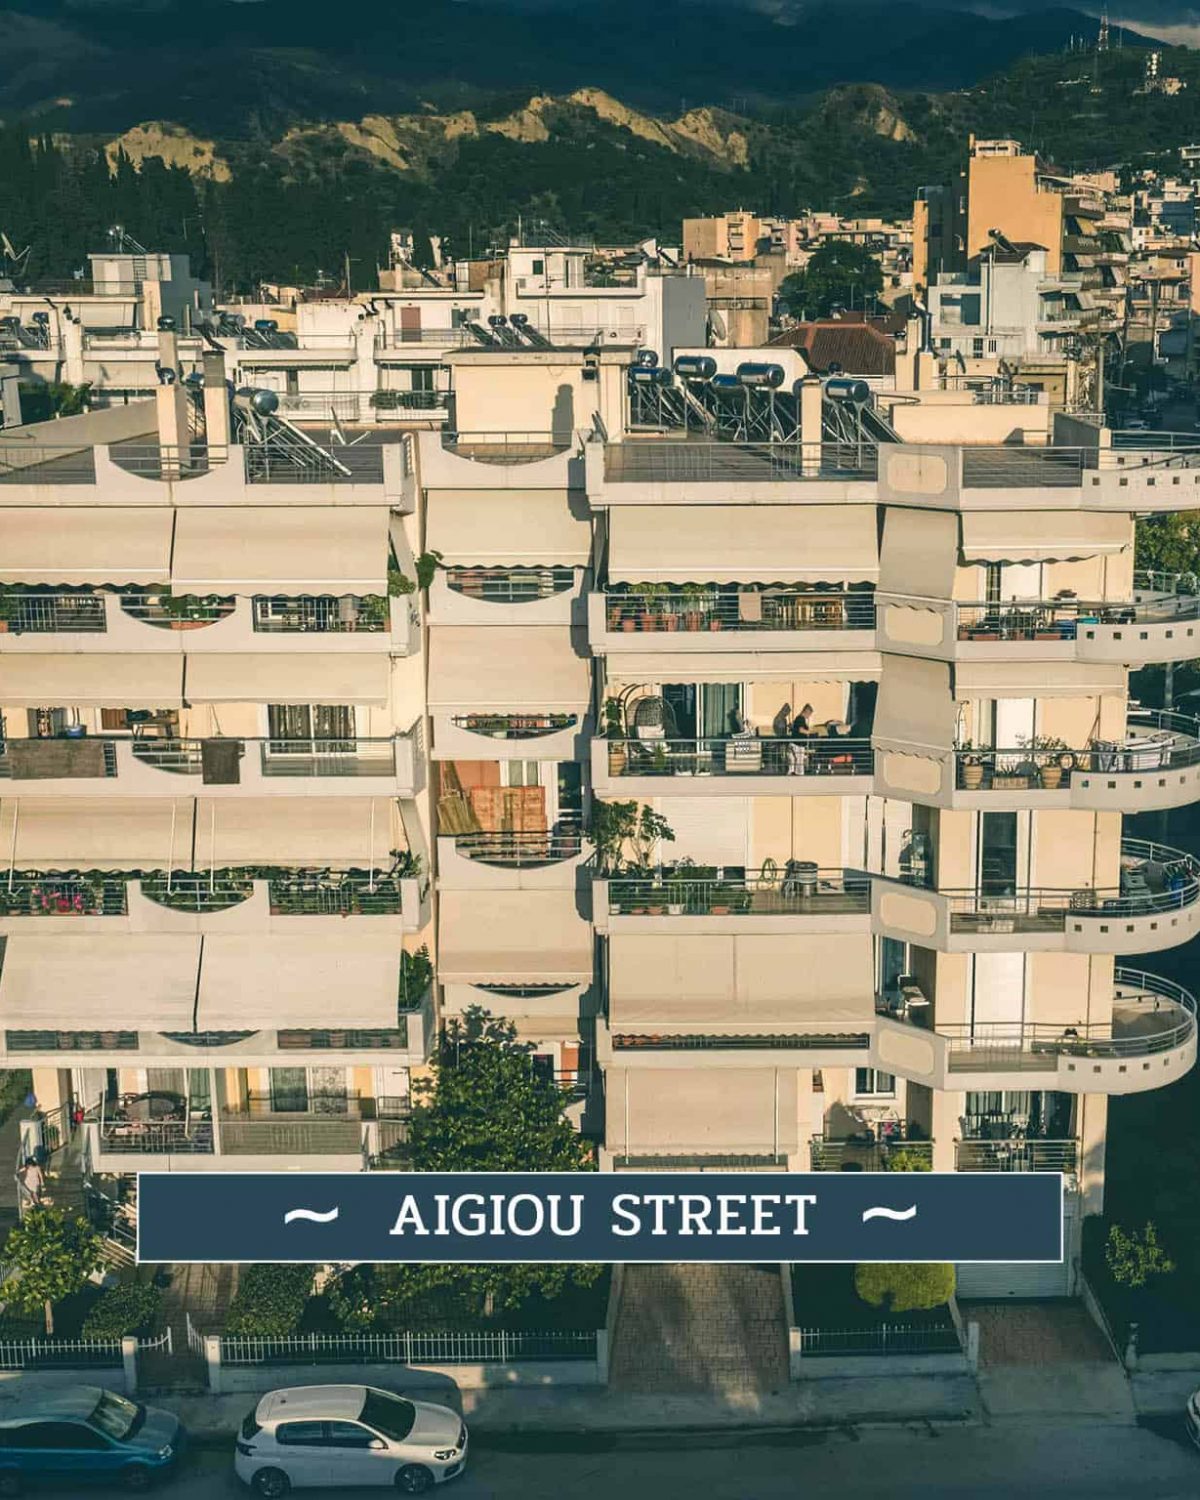 Aigiou street